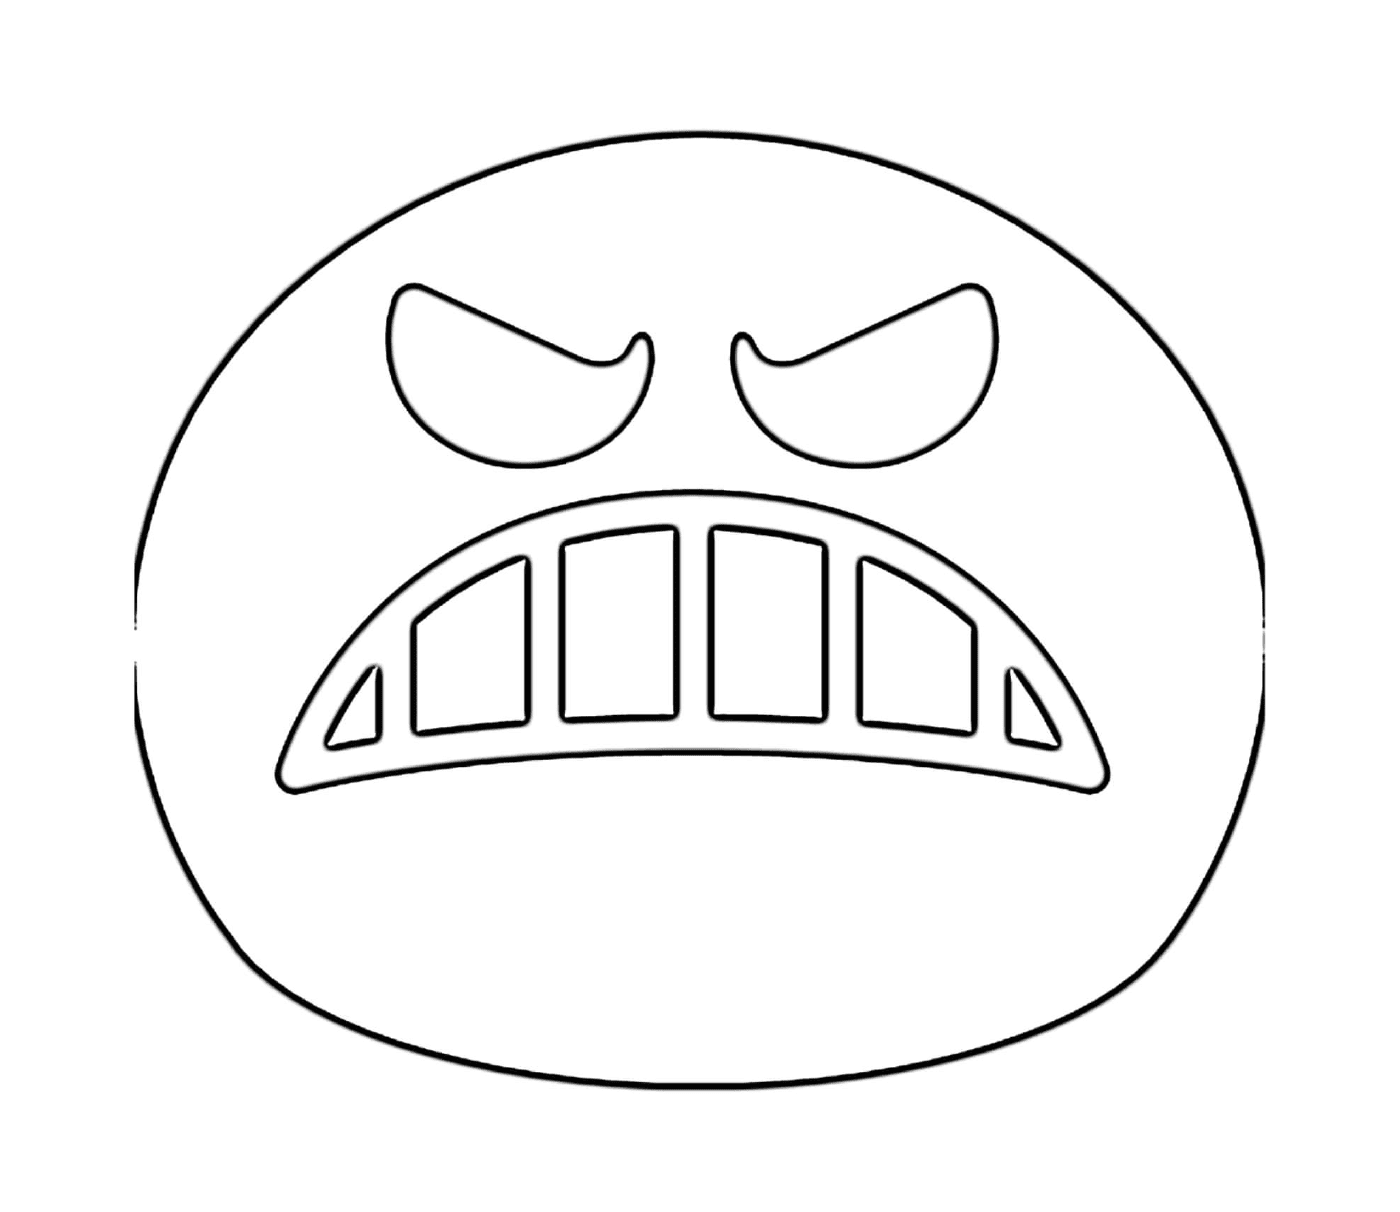  Un volto arrabbiato è disegnato 